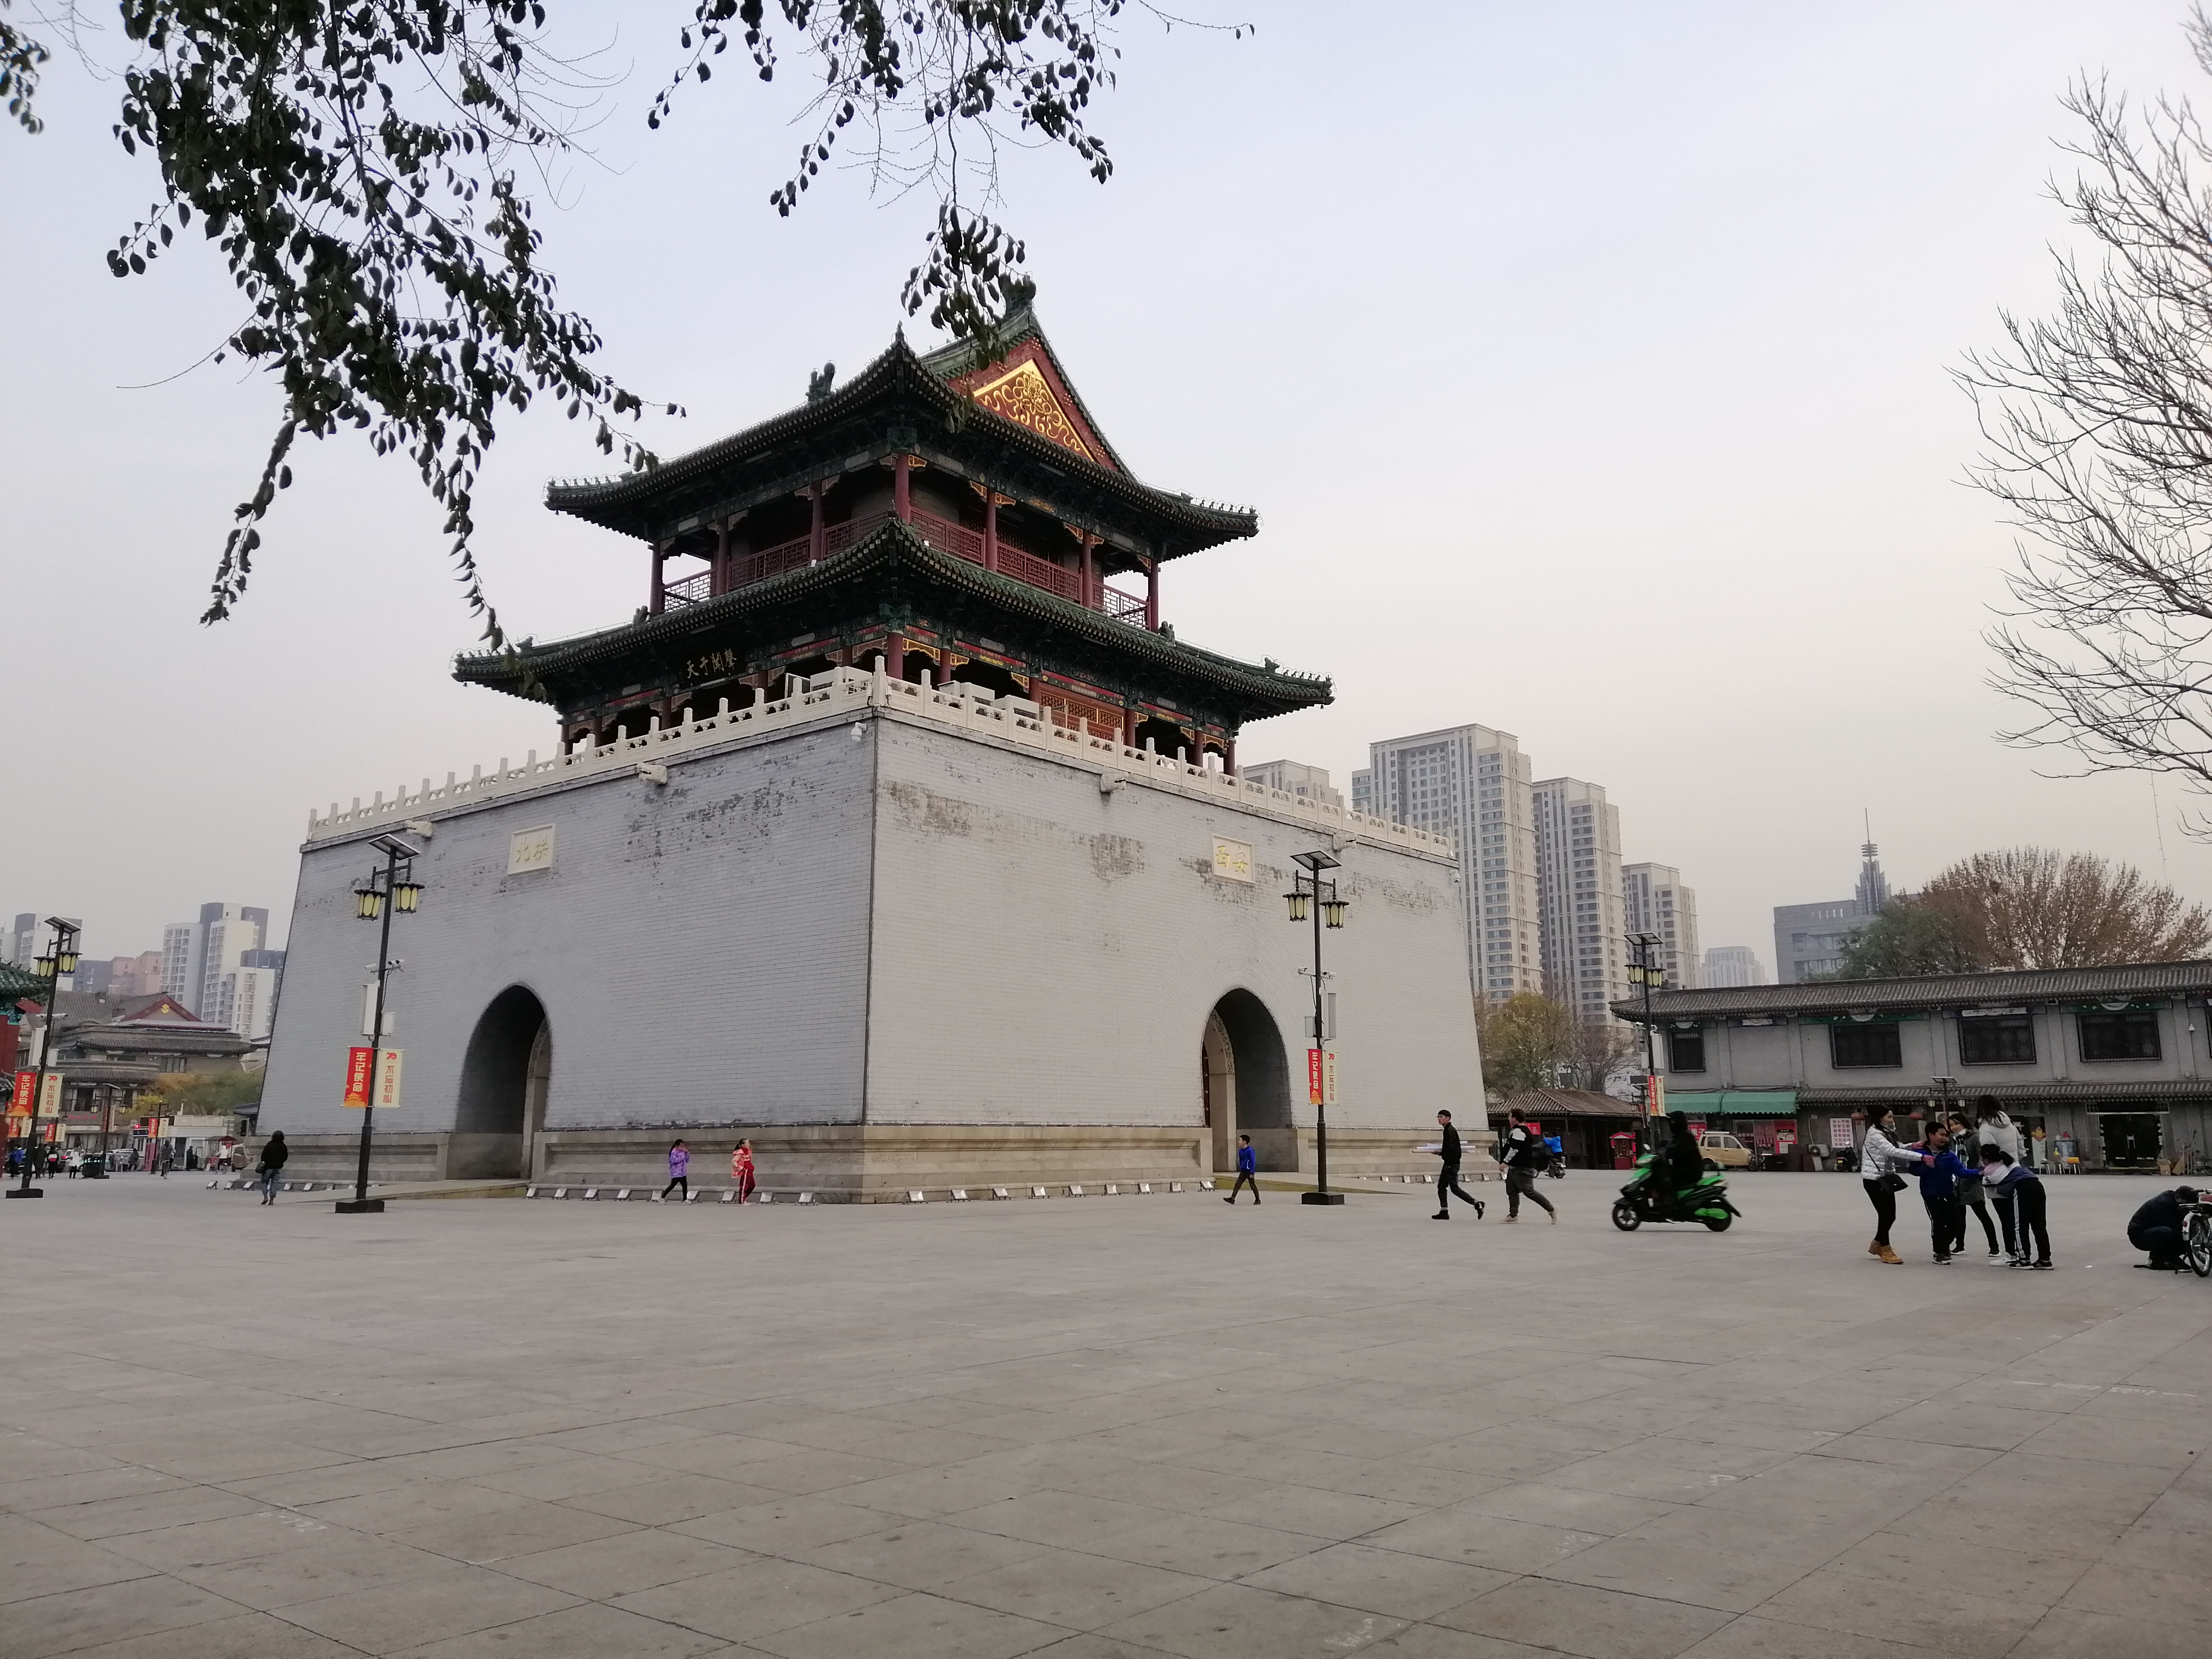 【携程攻略】南京鼓楼景点,鼓楼应该是南京的历史遗迹了，明朝时候用敲鼓来报时。因为这次住的离…